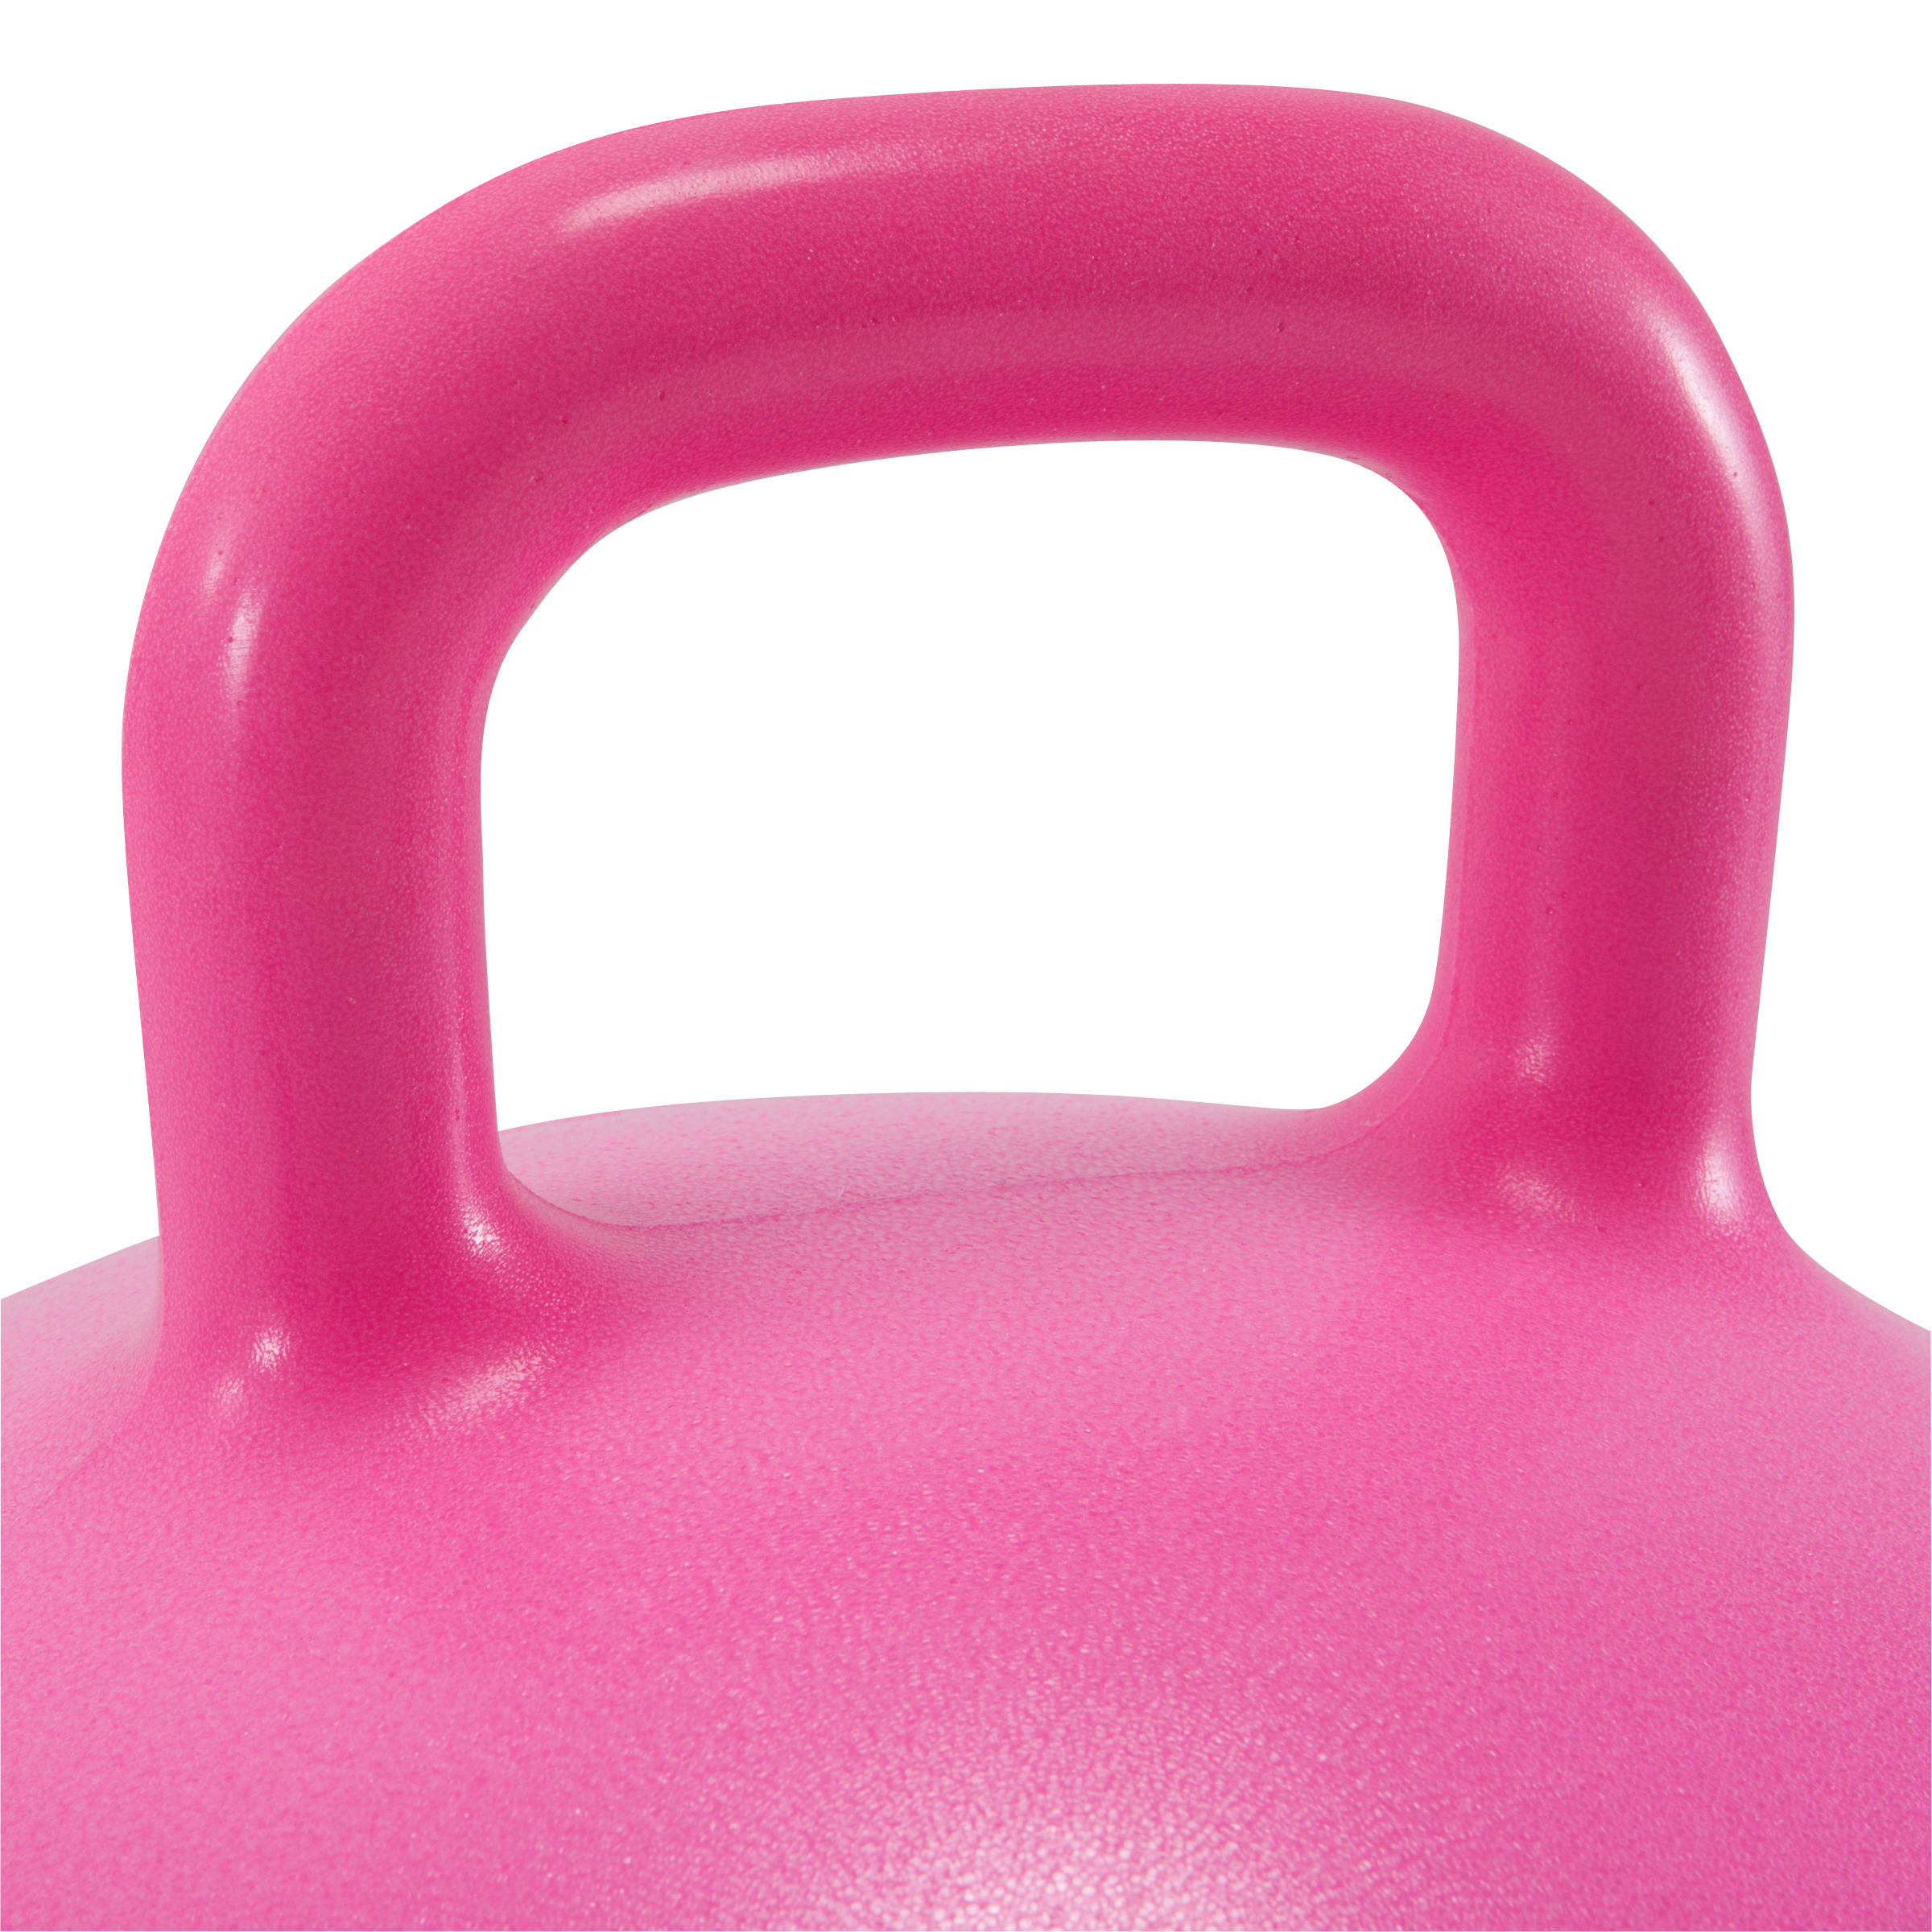 Ballon sauteur enfant - 45 cm rose - DOMYOS